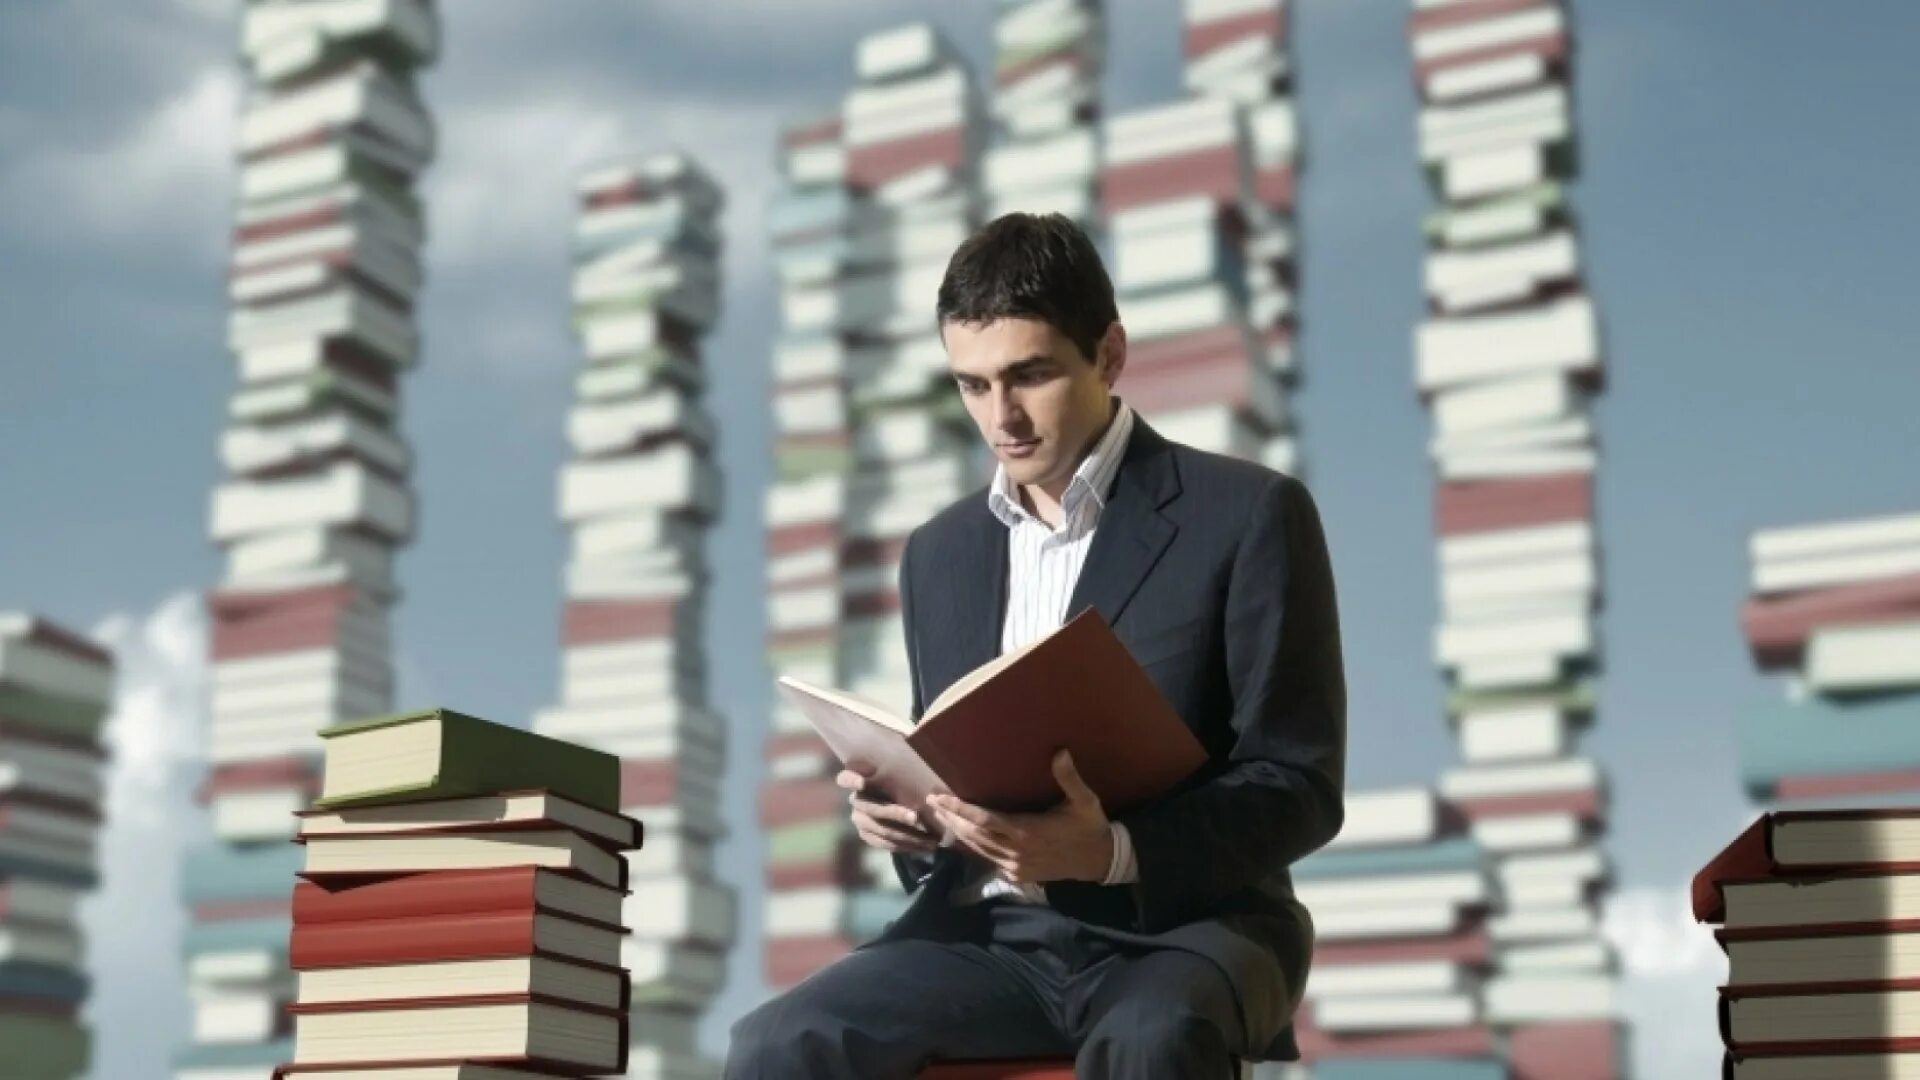 Том что кто много читает. Книга человек. Человек с книжкой. Чтение людей. Человек читает.